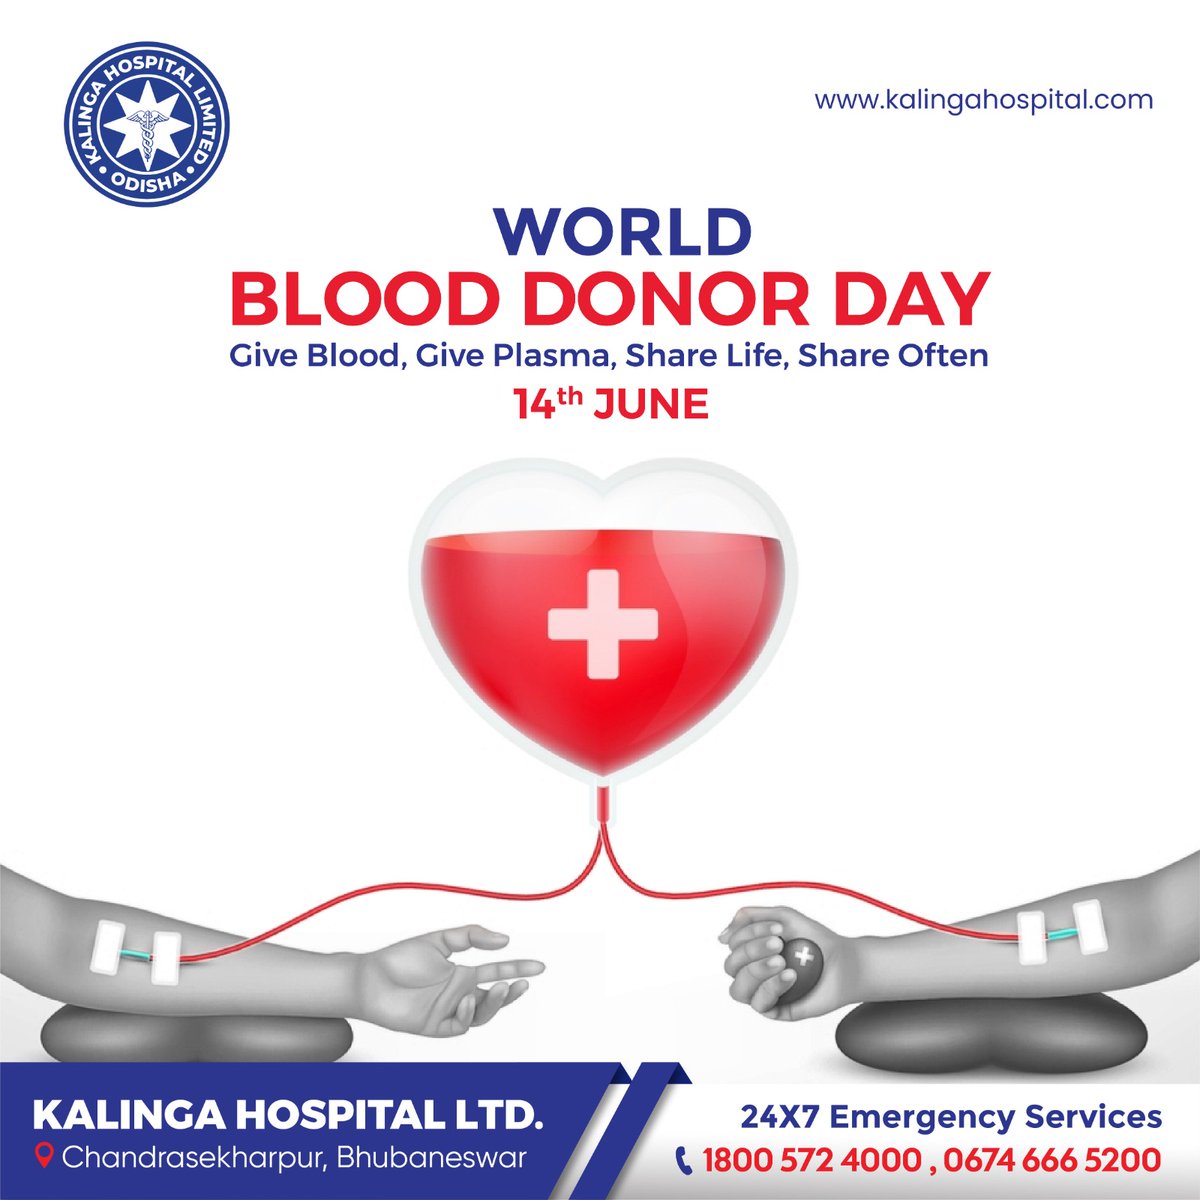 𝗦𝗵𝗮𝗿𝗶𝗻𝗴 𝗟𝗶𝗳𝗲, 𝗦𝗽𝗿𝗲𝗮𝗱𝗶𝗻𝗴 𝗛𝗼𝗽𝗲
Celebrating #BloodDonorDay

#DonateBloodSaveLives #BeAHeroDonateBlood #GiveBloodGiveLife #BloodDonationAwareness #DonateAndInspire #SavingLivesTogether #GiveBloodGiveHope #DonateForACause #BestHospital #KHL #KalingaHospital